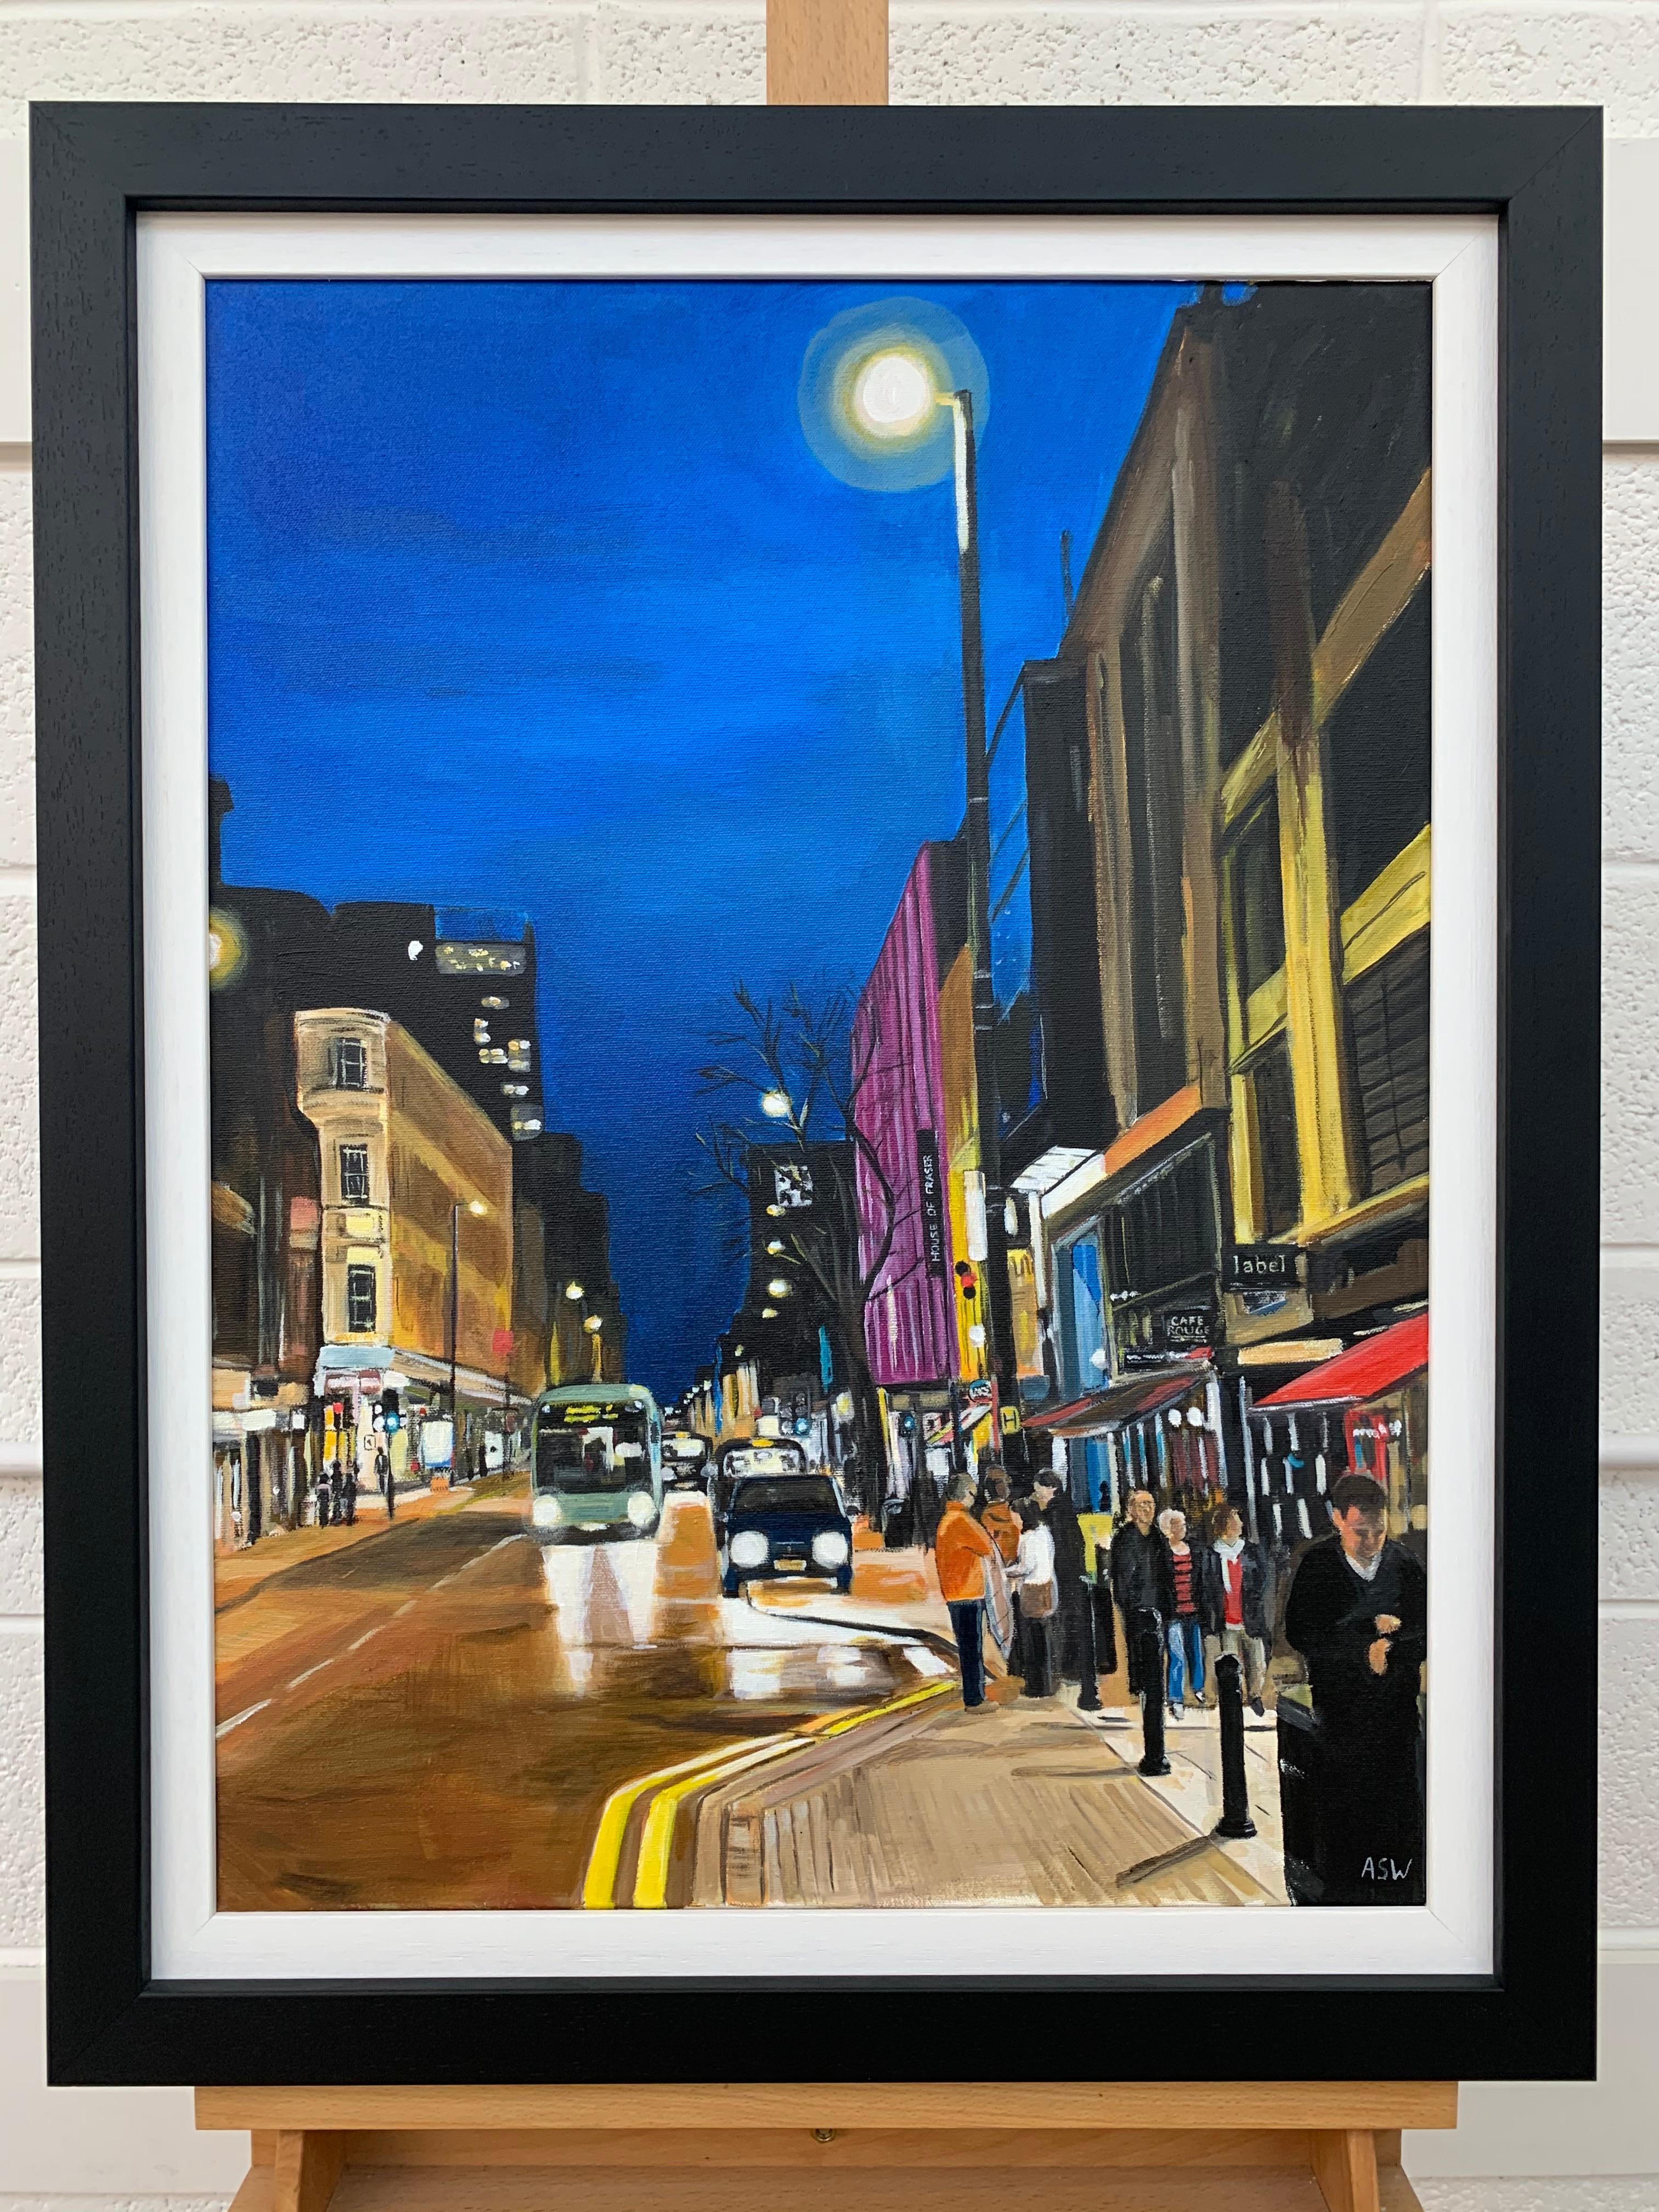 Deansgate in the Rain Manchester City Street Scene, England, von britischer Künstler (Violett), Landscape Painting, von Angela Wakefield